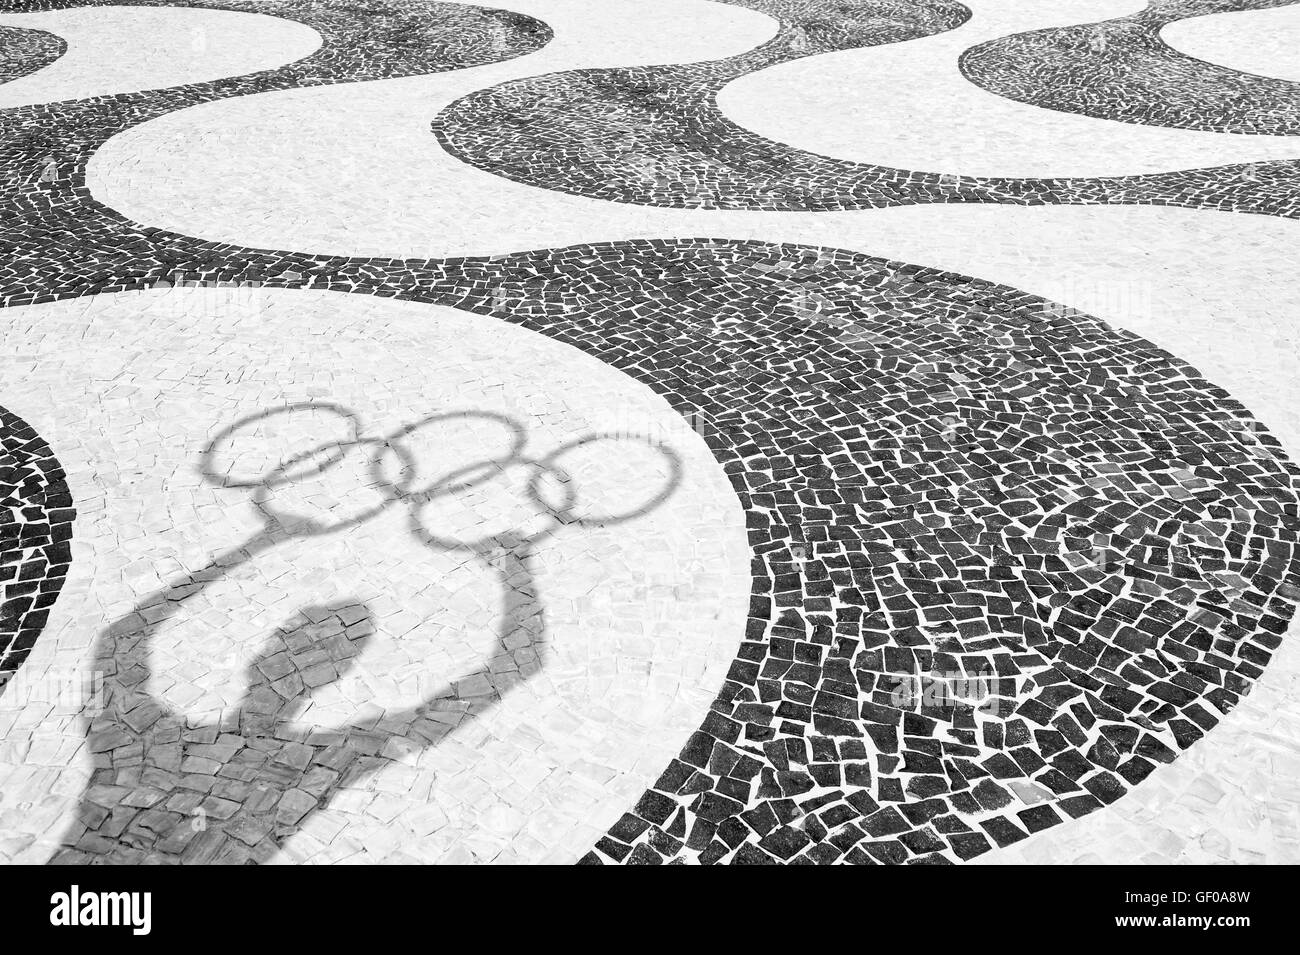 RIO DE JANEIRO, Brésil - 20 mars 2015 : Shadow of man holding anneaux olympiques sur le carreau arrière-plan de la plage de Copacabana. Banque D'Images